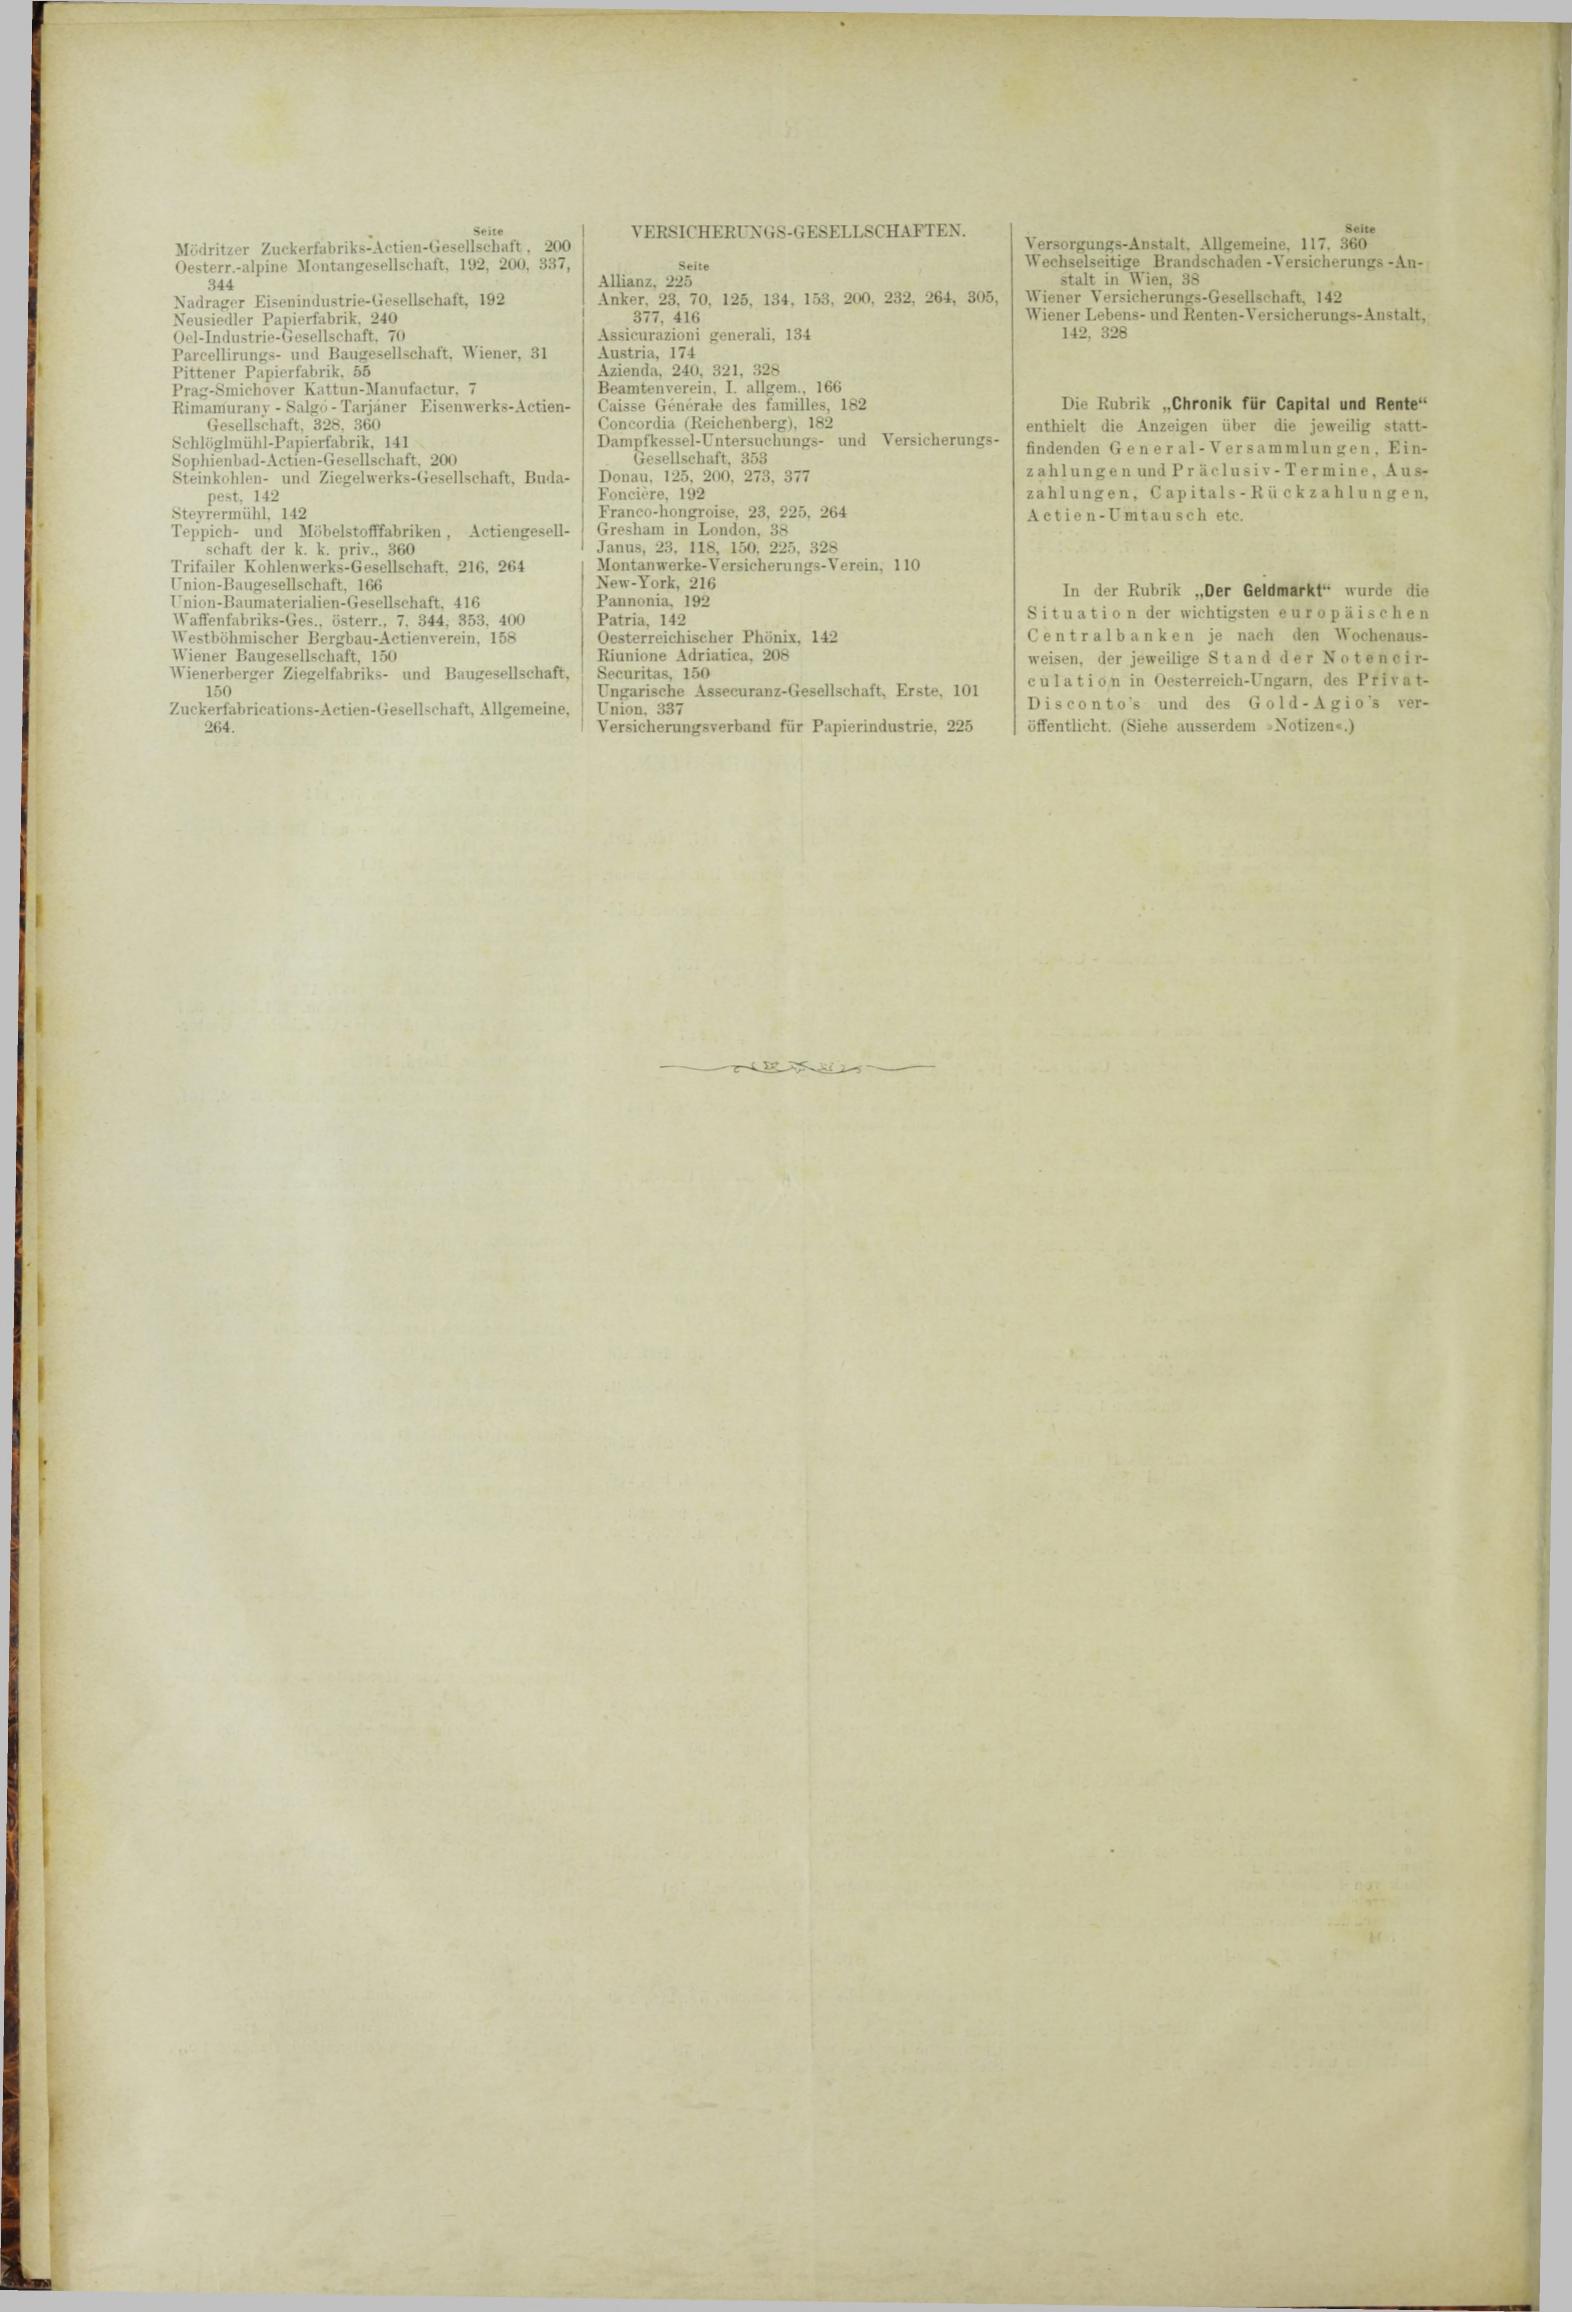 Der Tresor 08.11.1883 - Seite 12